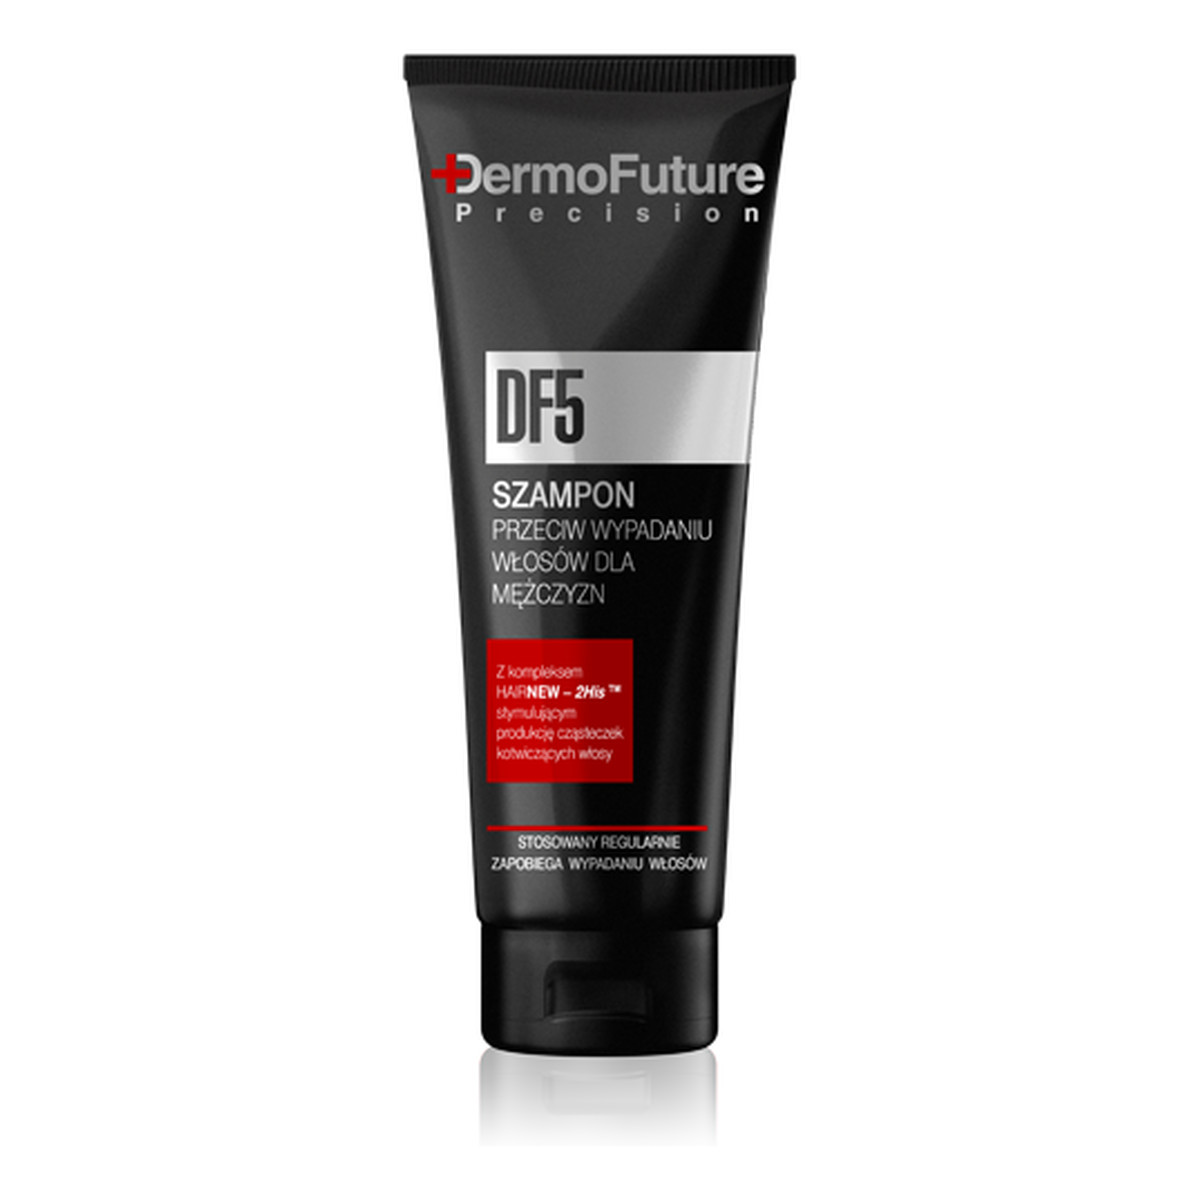 DermoFuture Precision DF5 Szampon Przeciw Wypadaniu Włosów Dla Mężczyzn 200ml